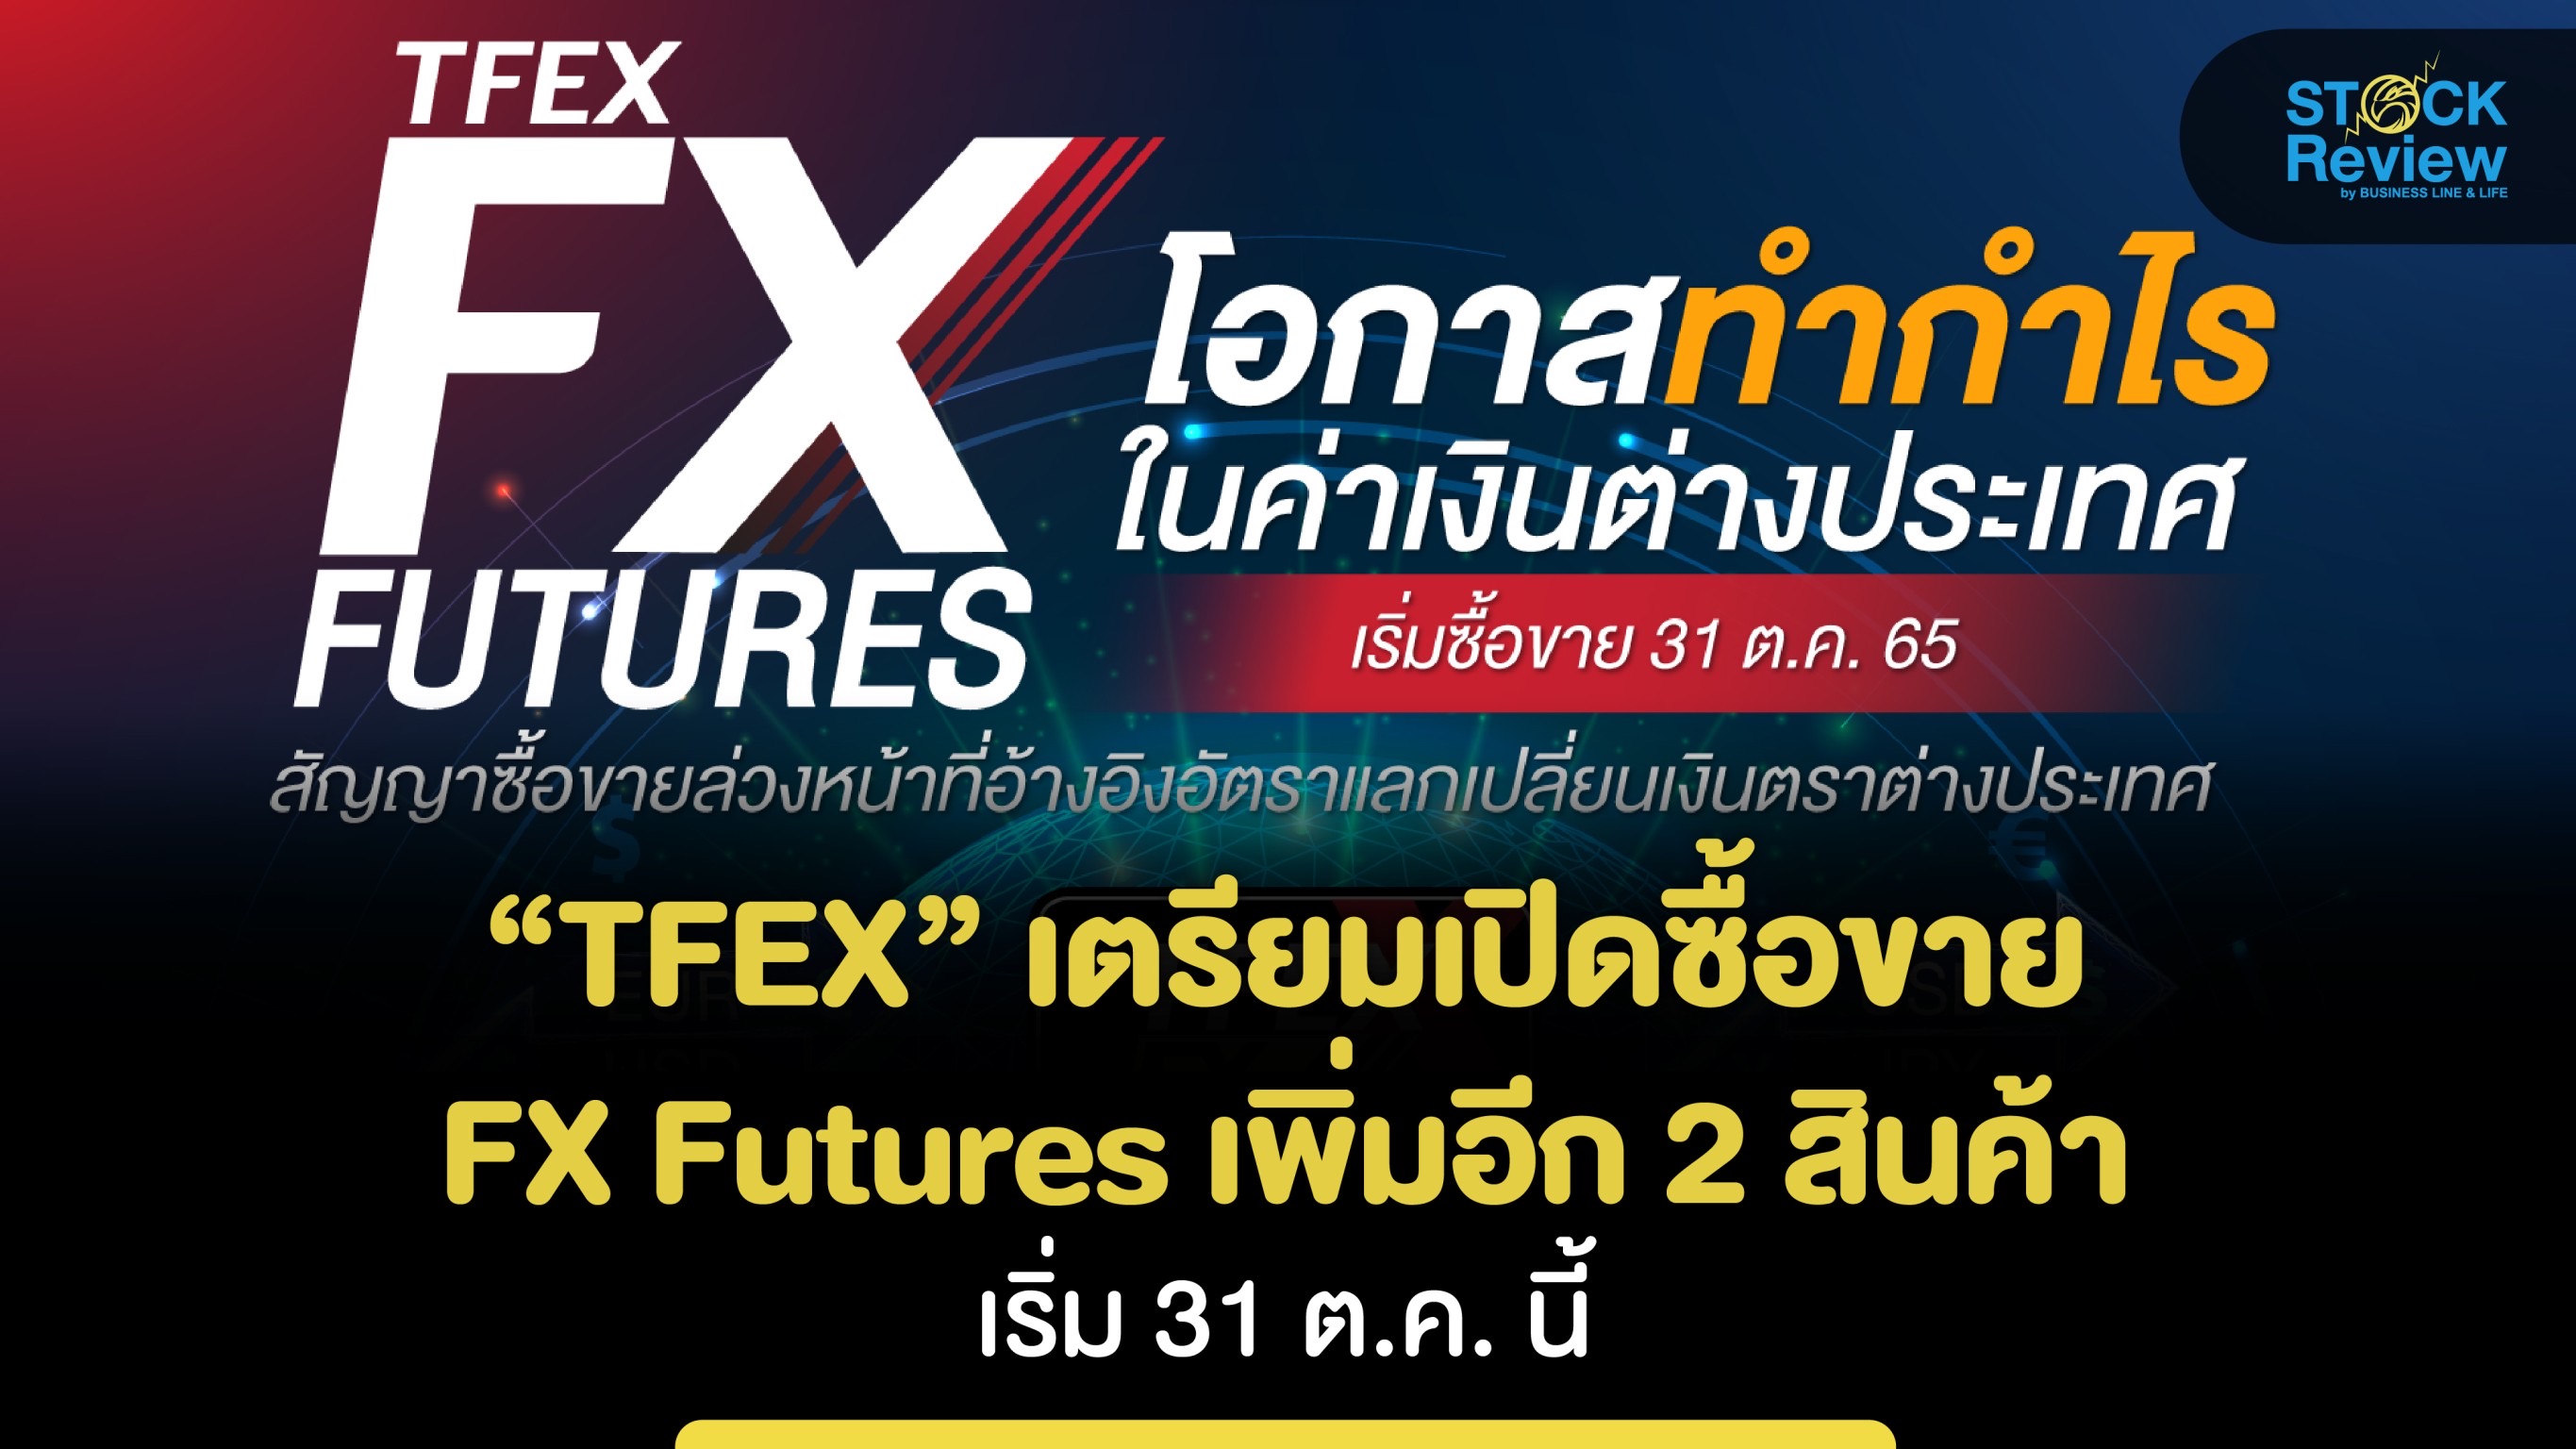 TFEX เตรียมเปิดซื้อขาย FX Futures เพิ่มอีก 2 สินค้า เริ่ม 31 ต.ค. นี้